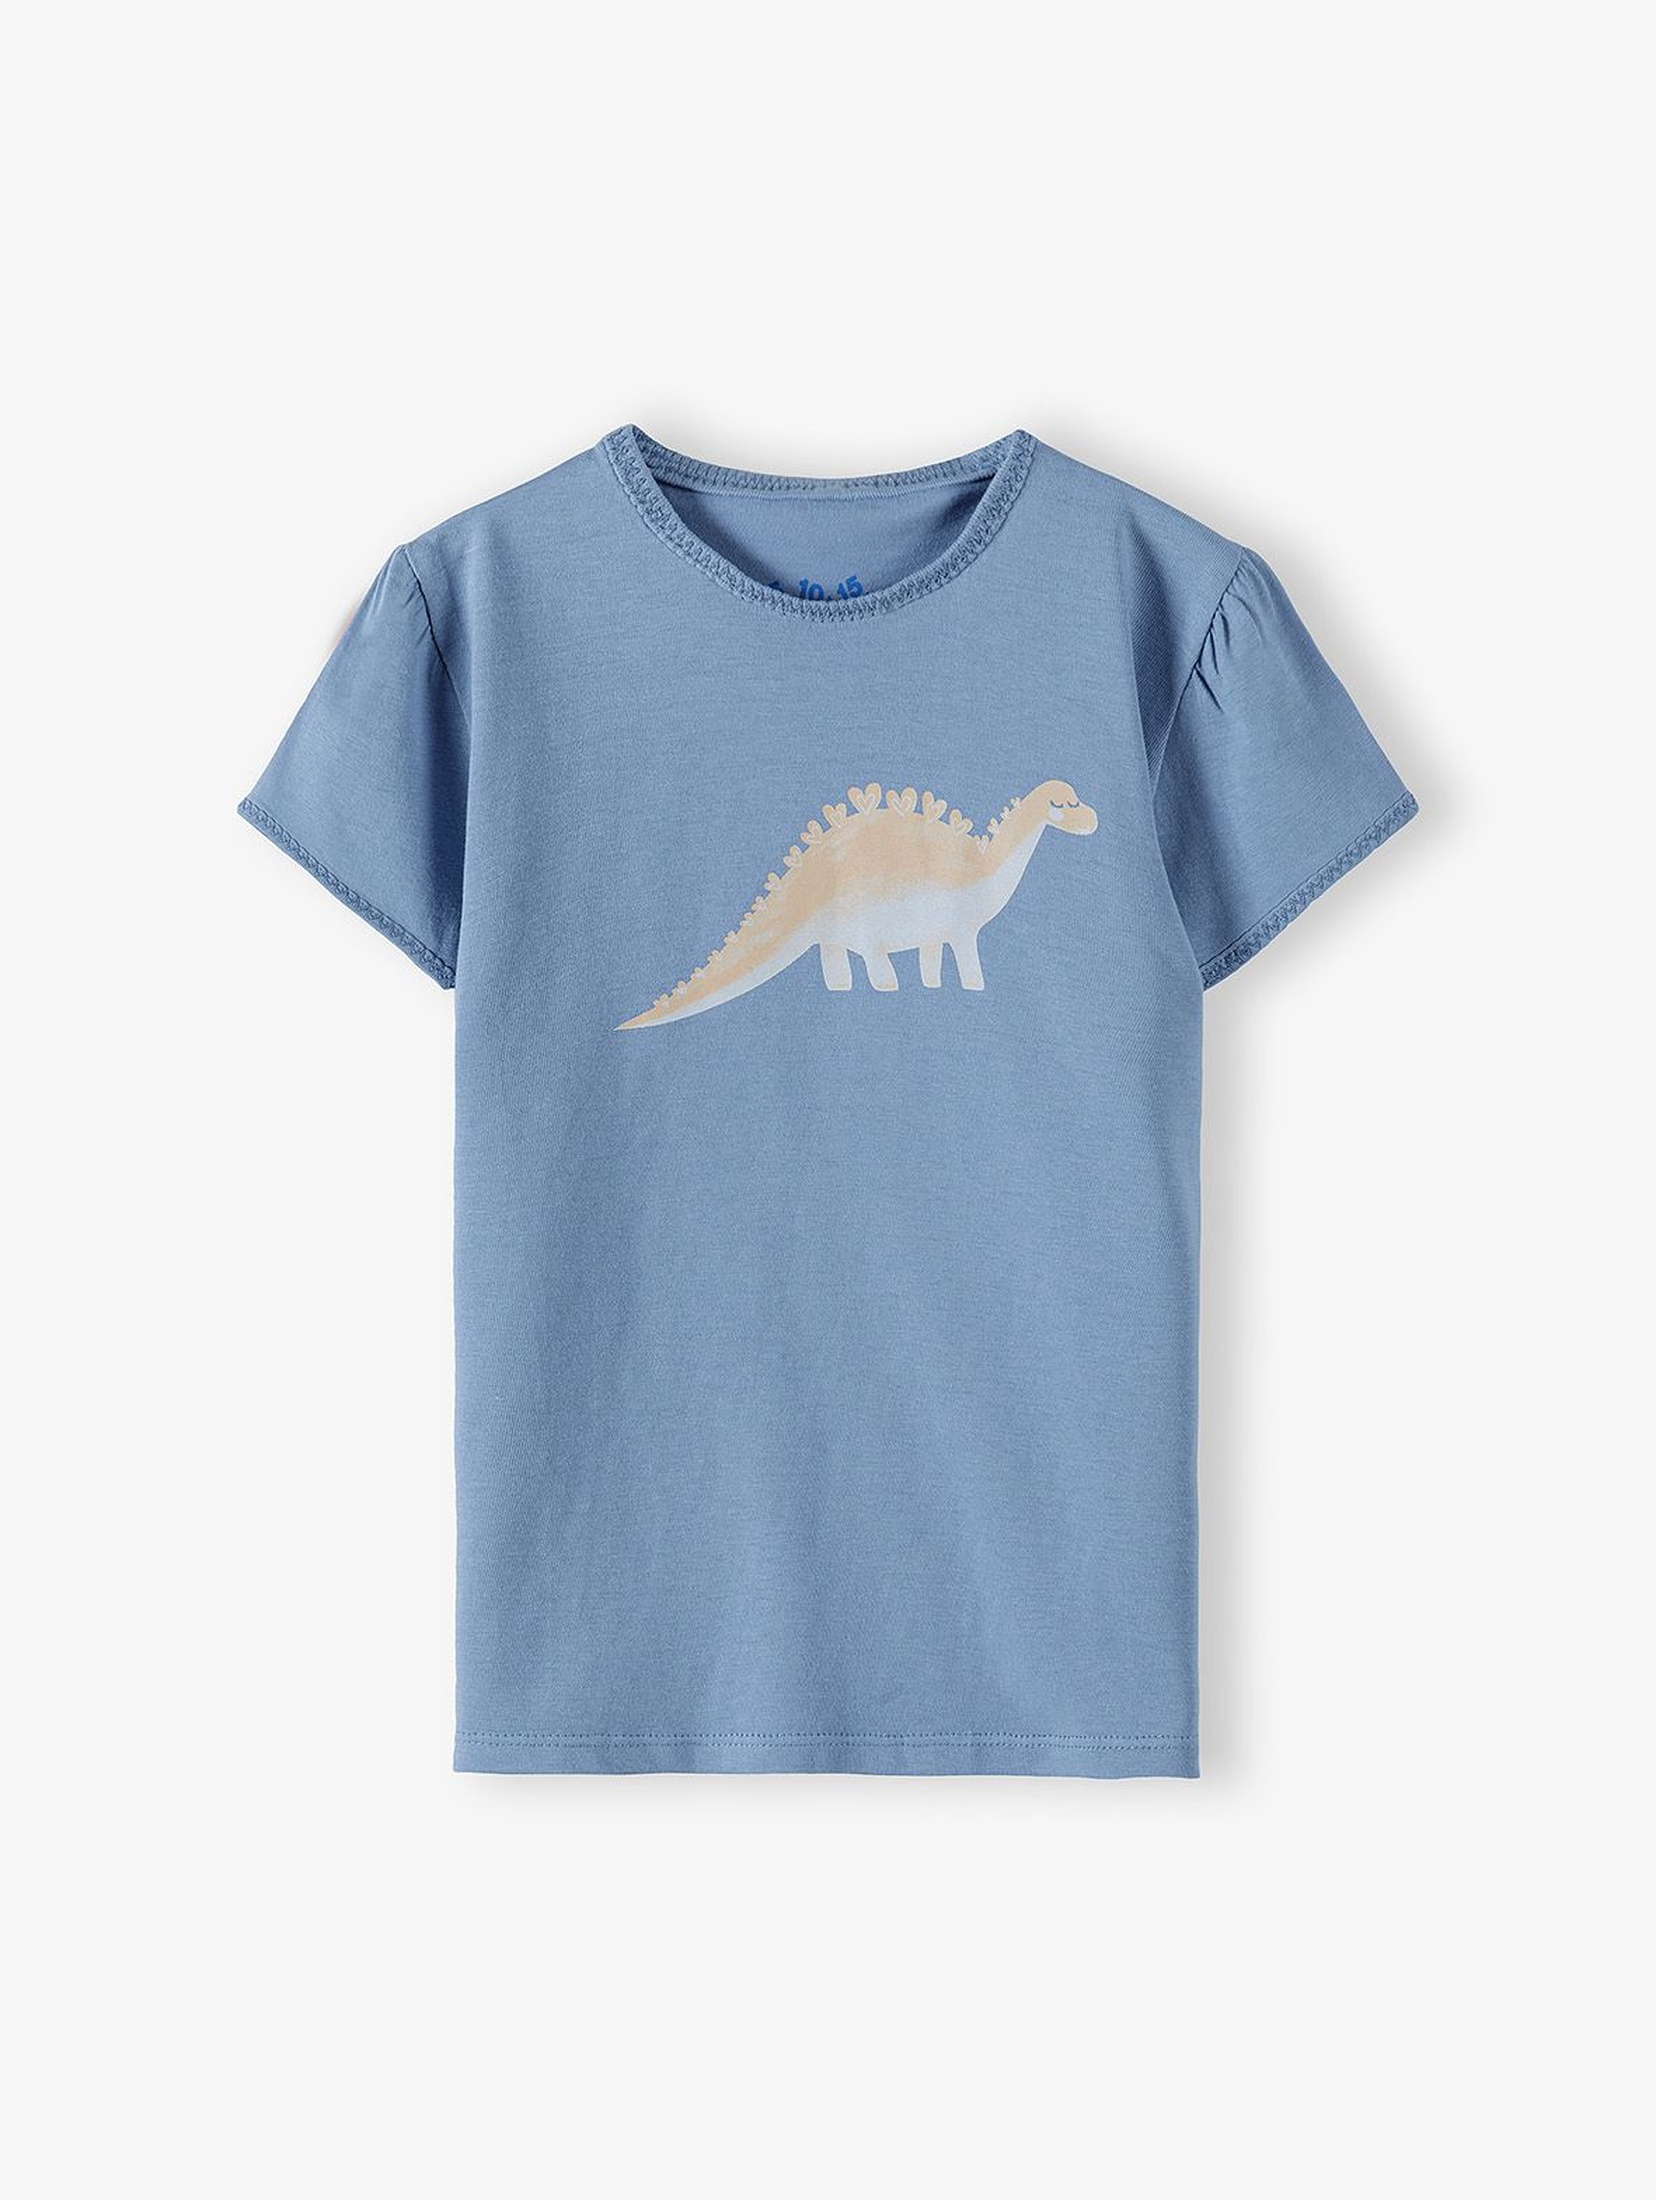 Bawełniany niebieski t-shirt dziewczęcy z dinozaurem